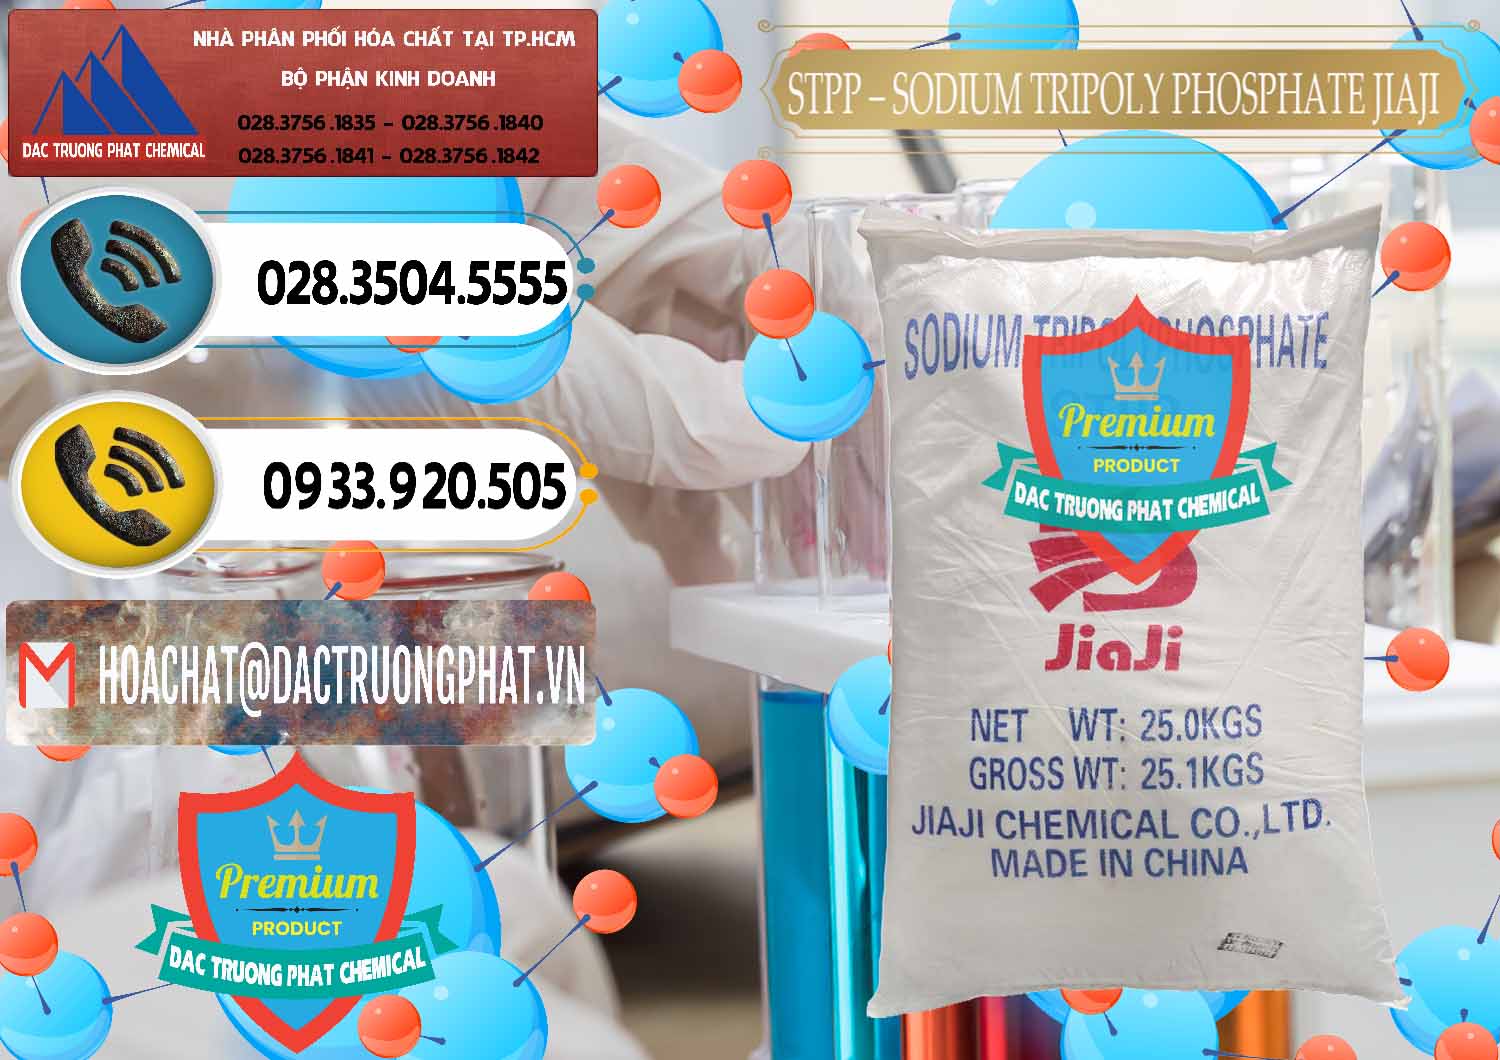 Nơi chuyên cung cấp & bán Sodium Tripoly Phosphate - STPP Jiaji Trung Quốc China - 0154 - Nơi cung cấp ( nhập khẩu ) hóa chất tại TP.HCM - hoachatdetnhuom.vn